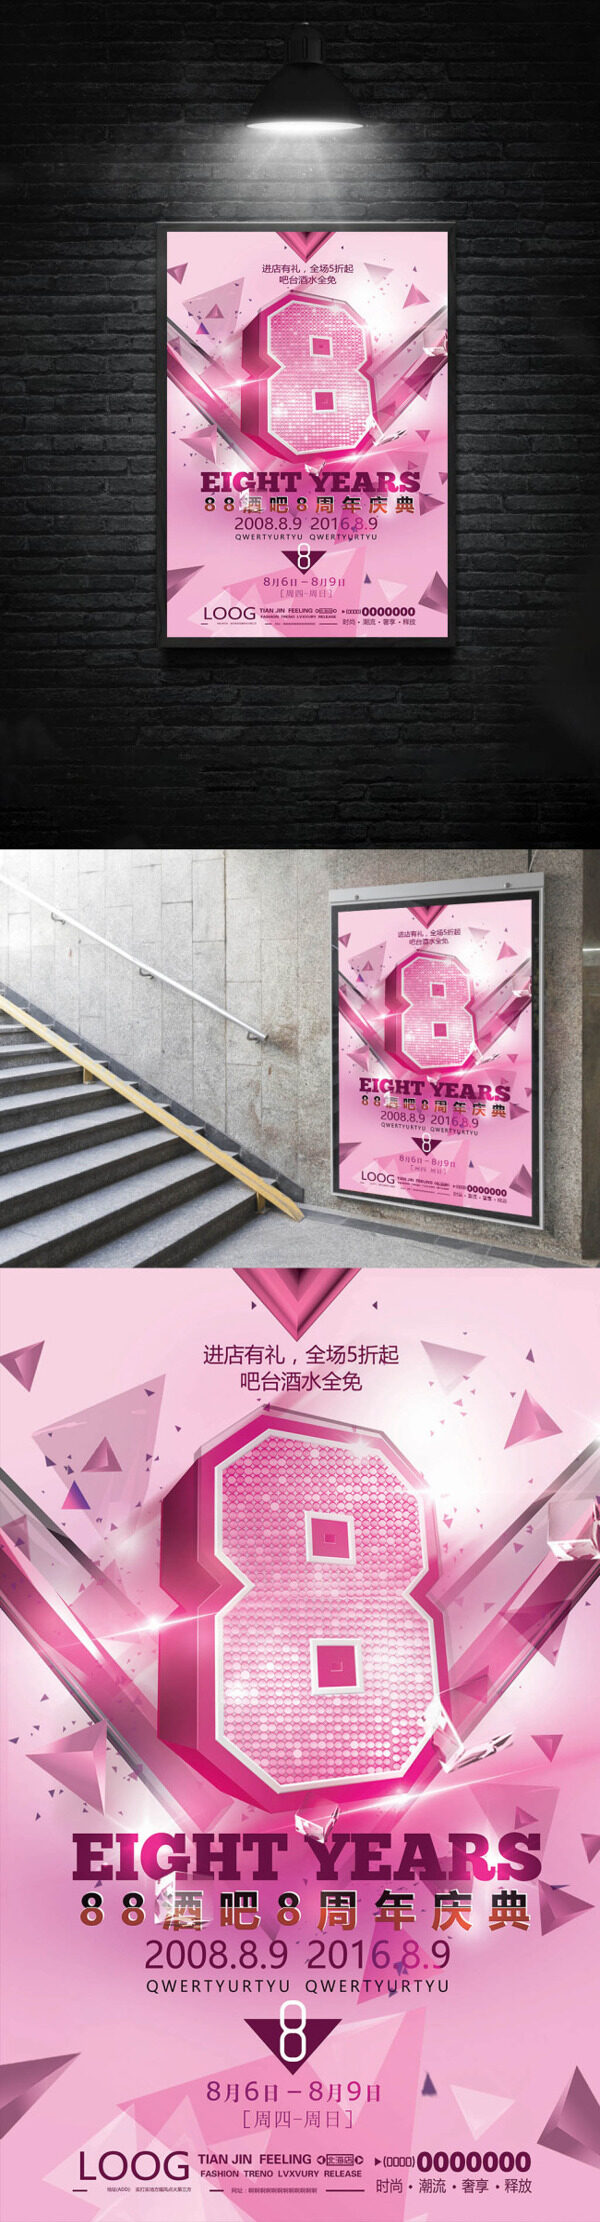 粉红色系周年庆海报